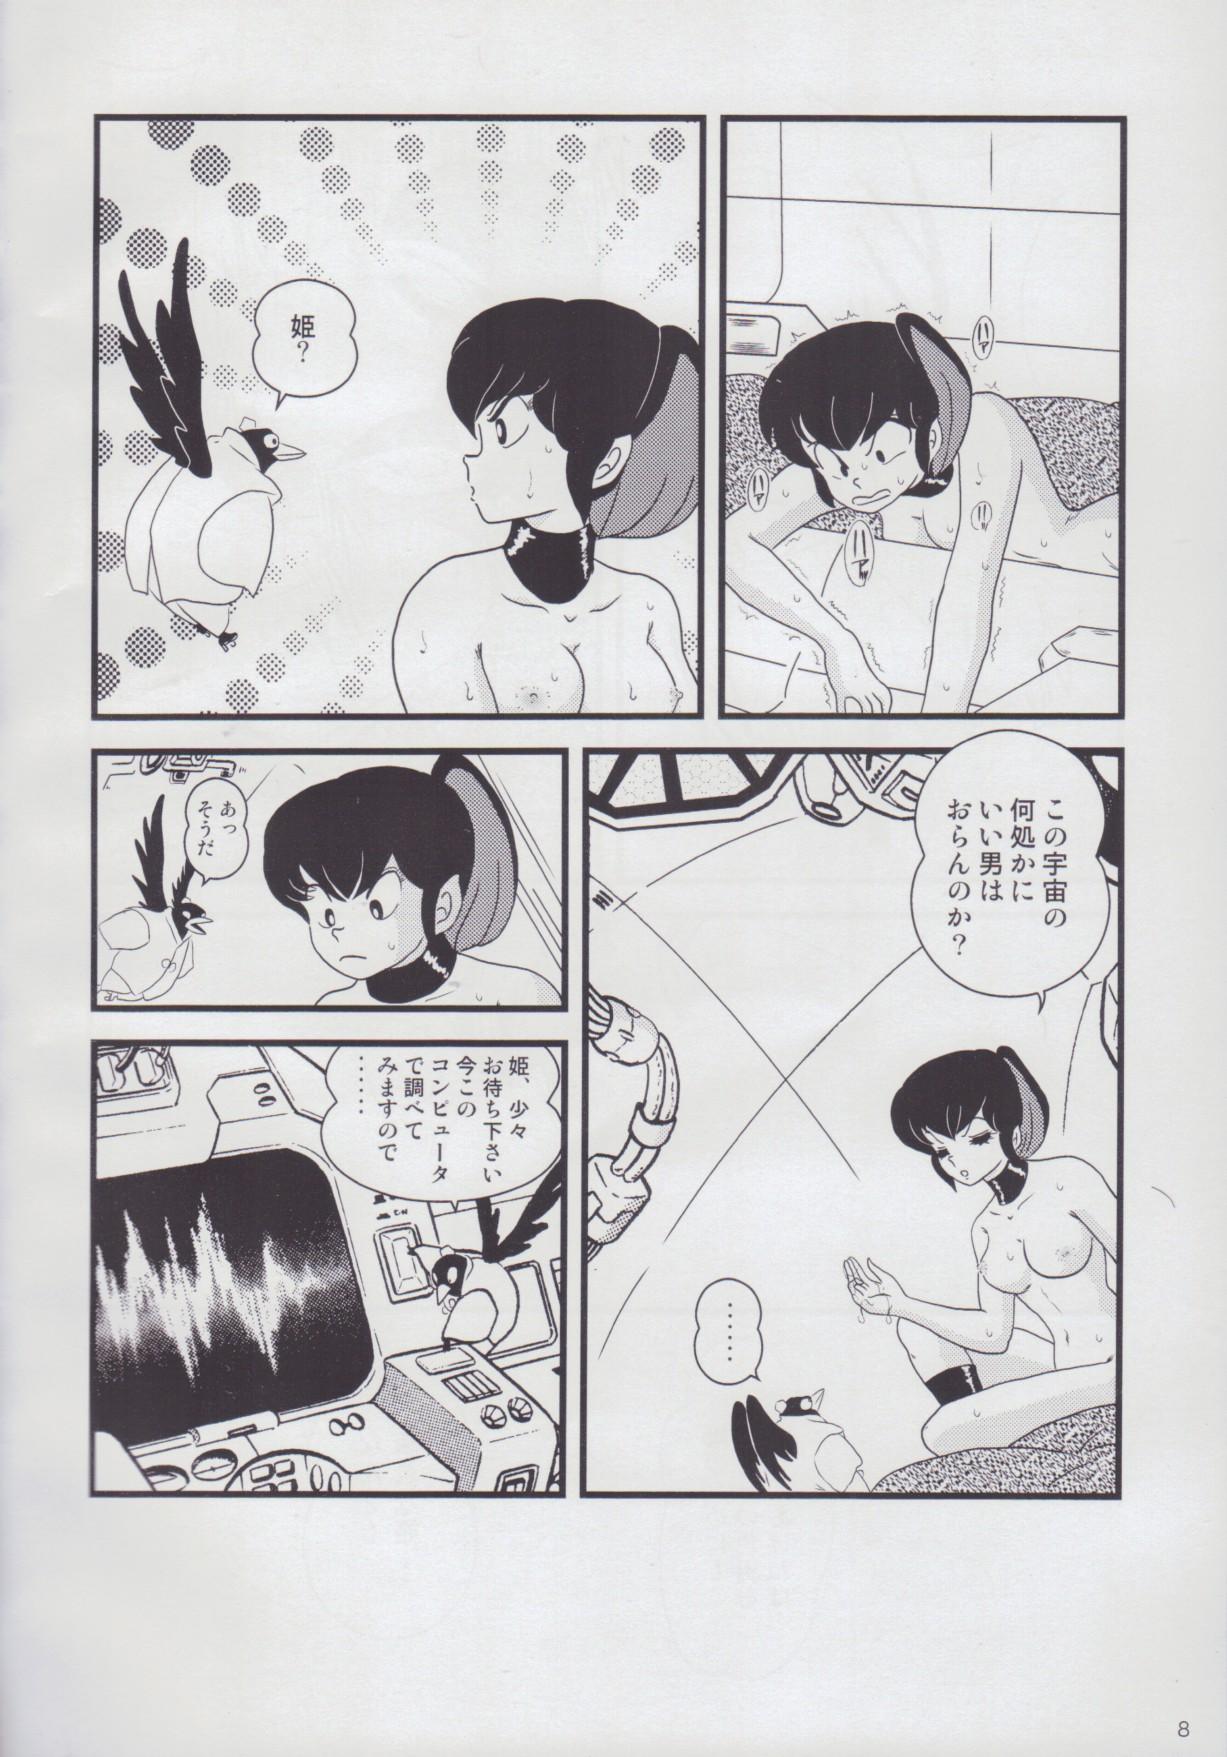 Farting Fairy 12 - Urusei yatsura Toys - Page 10